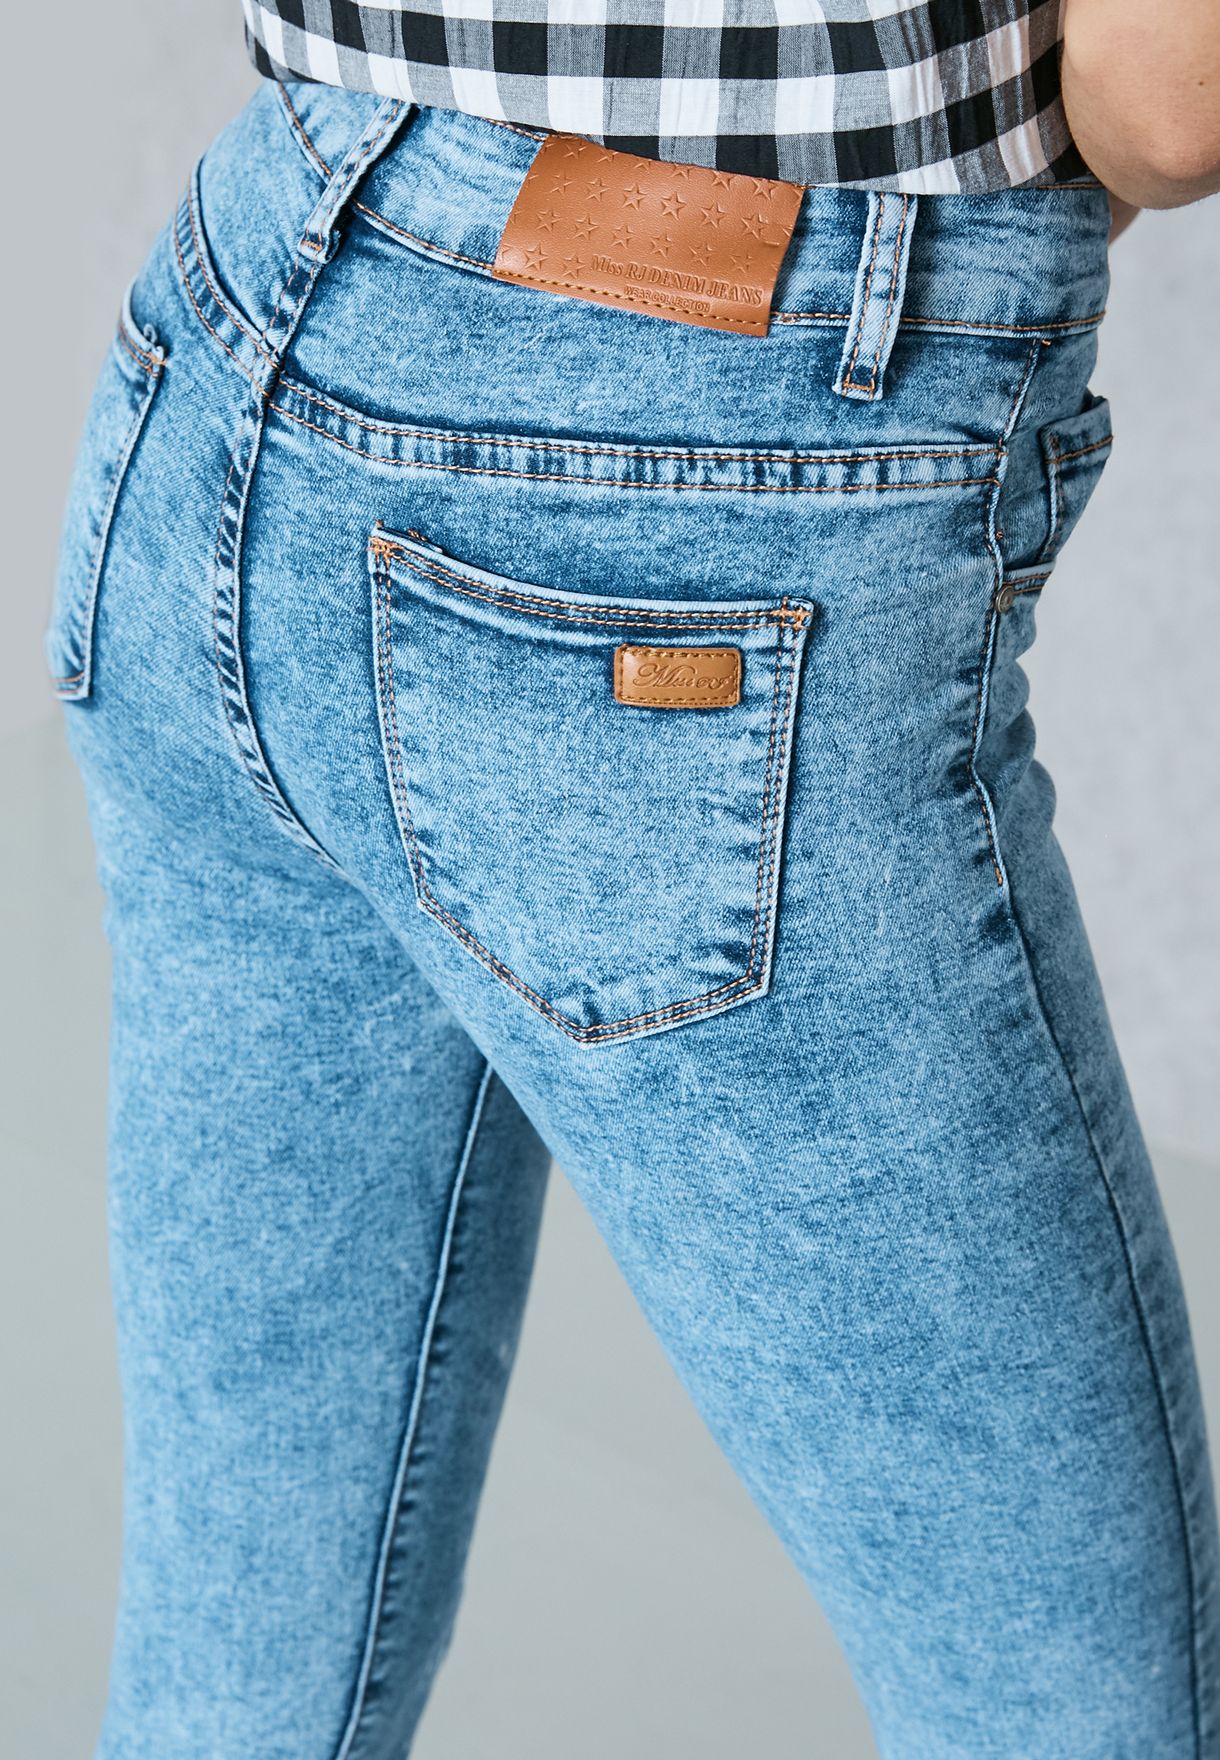 miss rj jeans new fashion denim